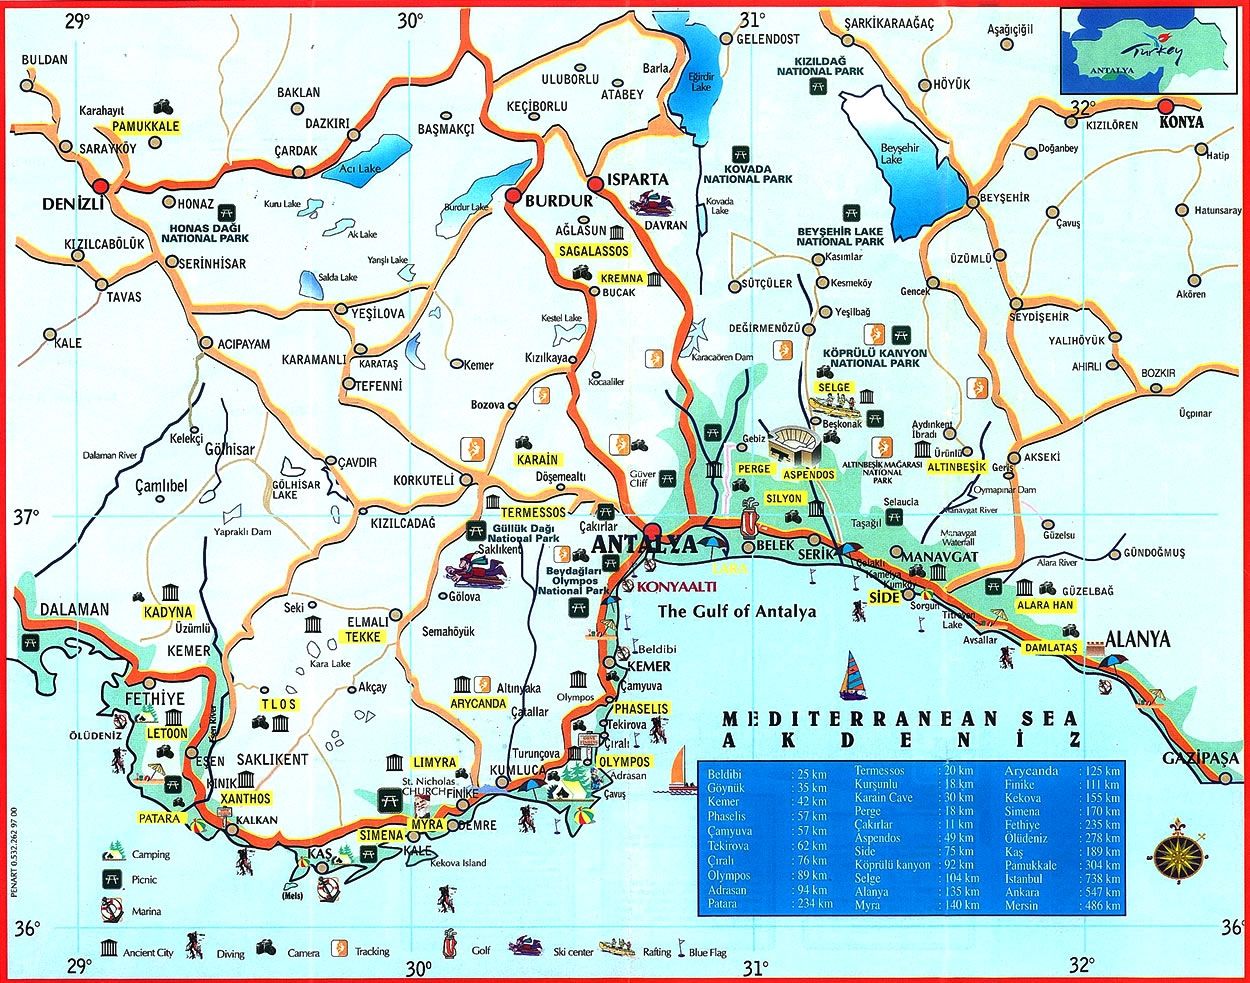 Карта побережья Анталии с достопримечательностями - Турция, скачать картуне на русском языке